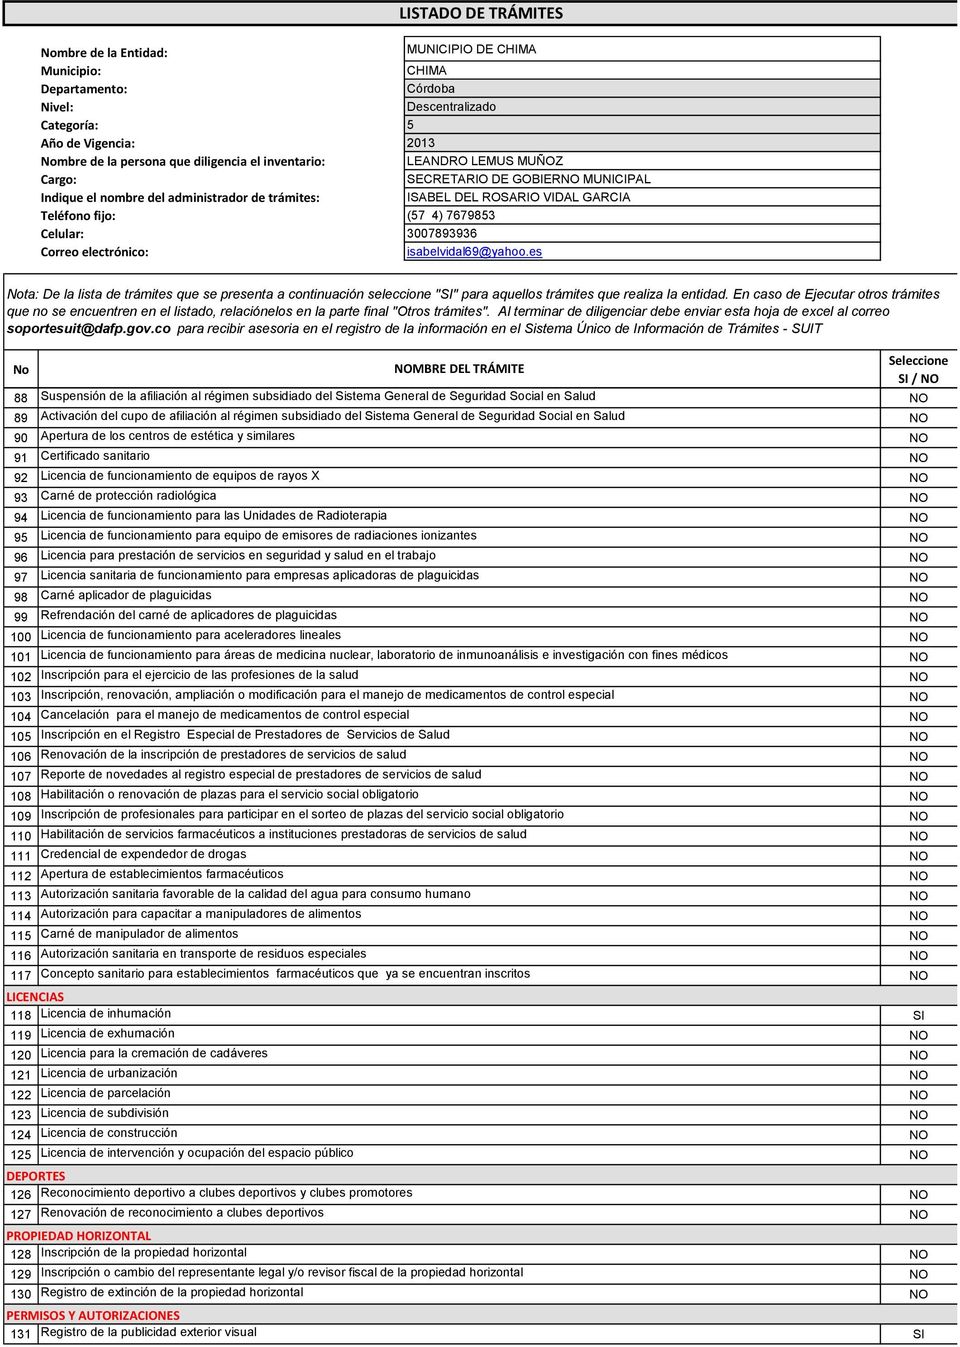 Certificado sanitario 92 Licencia de funcionamiento de equipos de rayos X 93 Carné de protección radiológica 94 Licencia de funcionamiento para las Unidades de Radioterapia 95 Licencia de